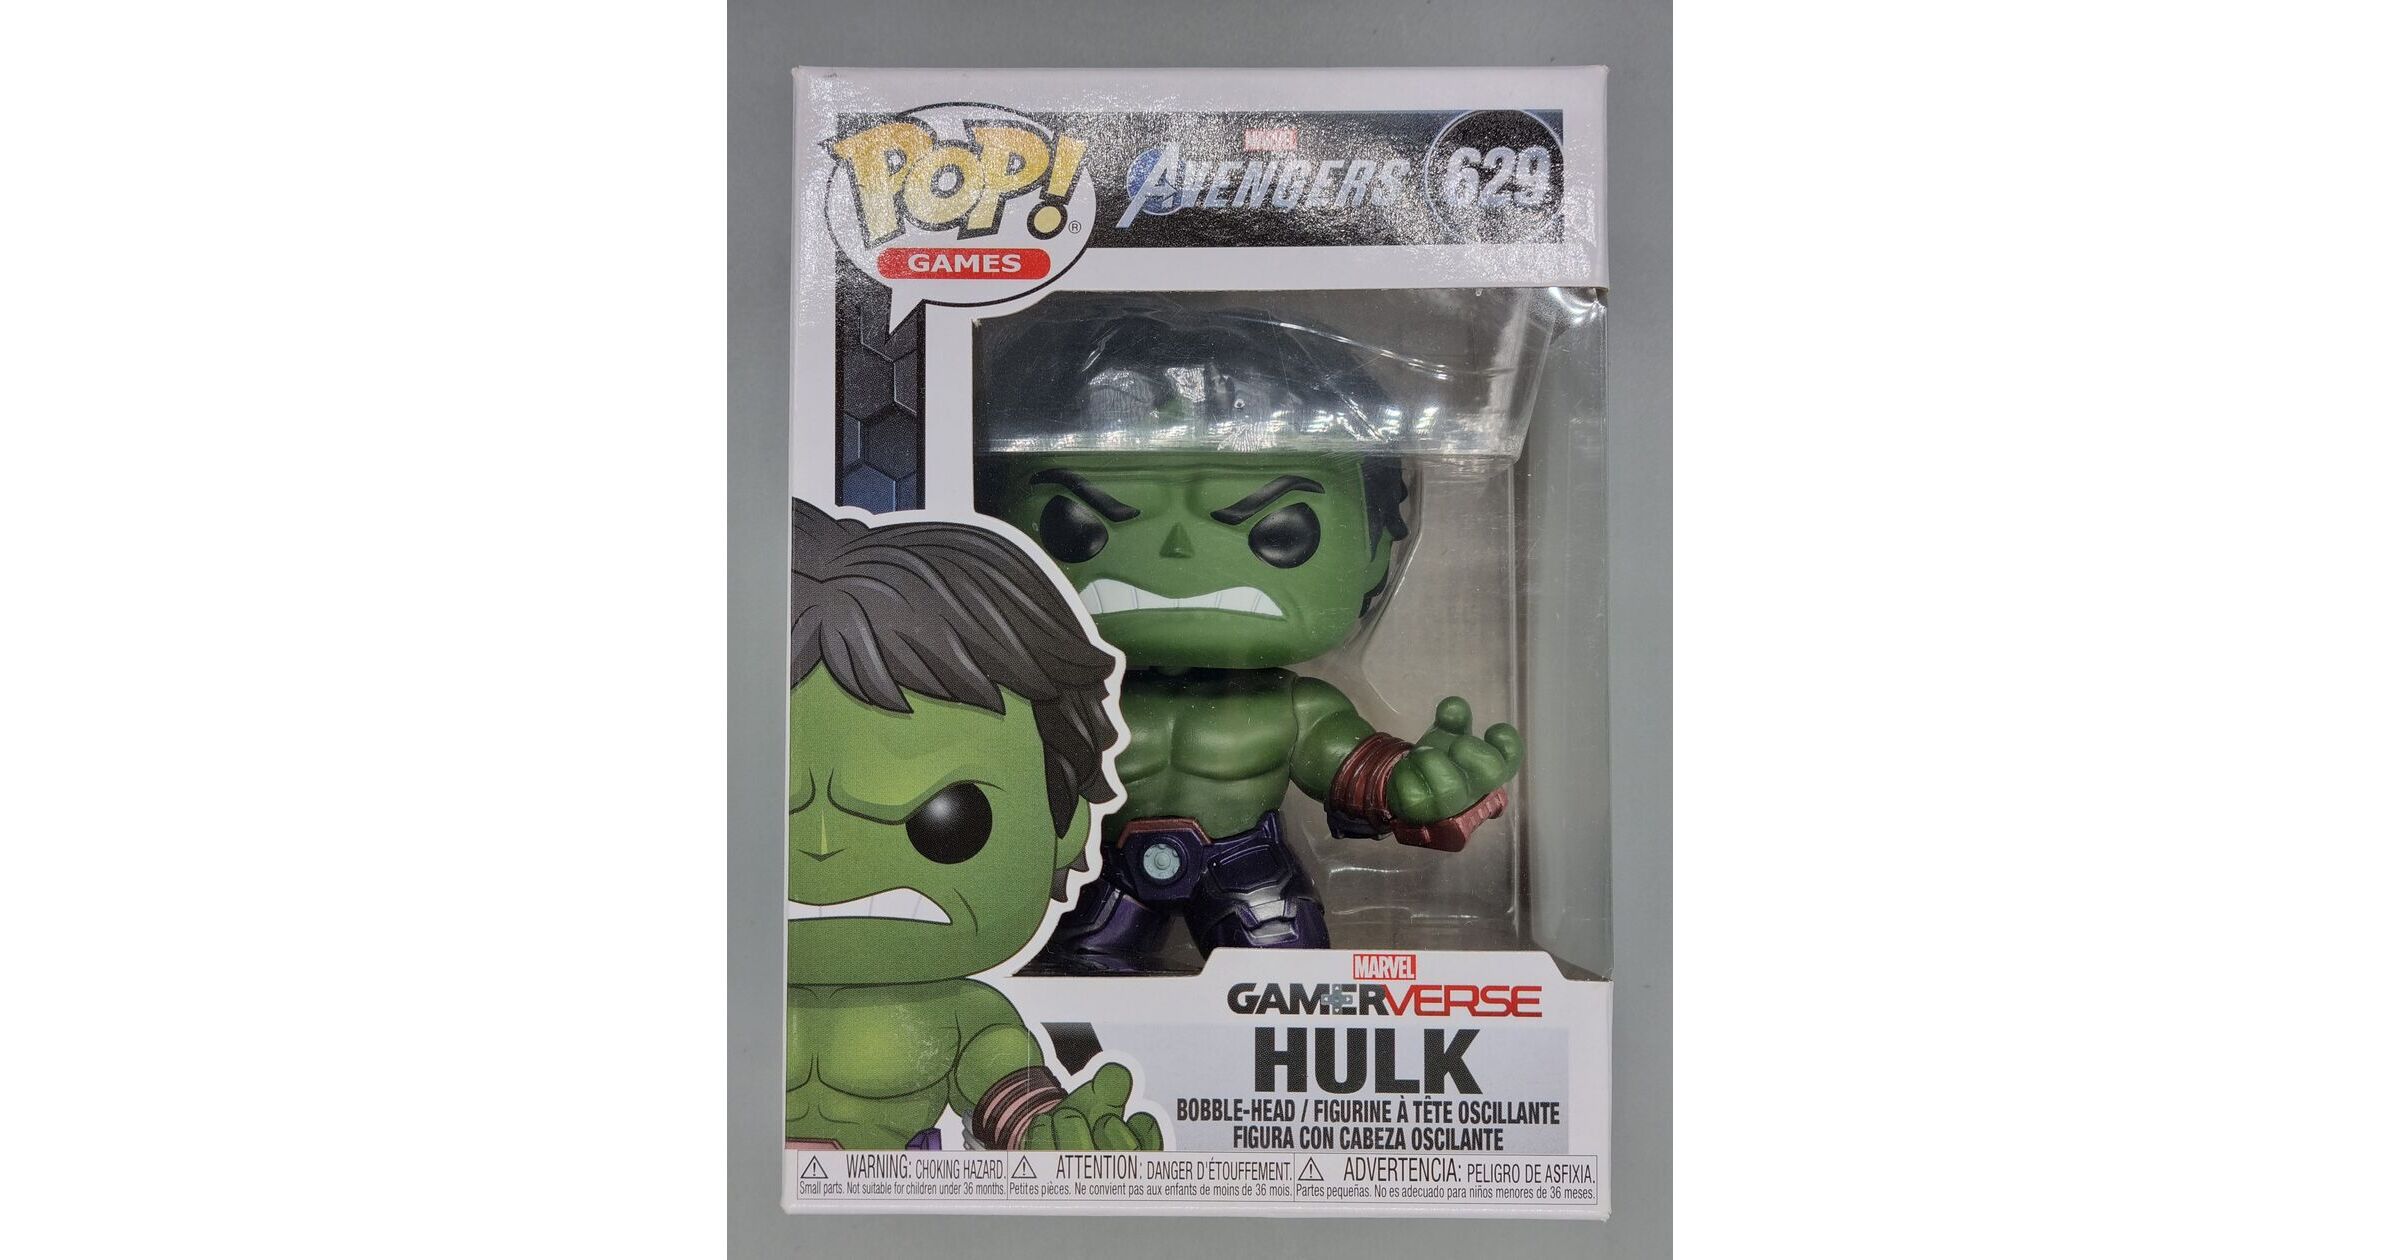 Hulk – Marvel Avengers Gamerverse – 629 - Funko Pop! 